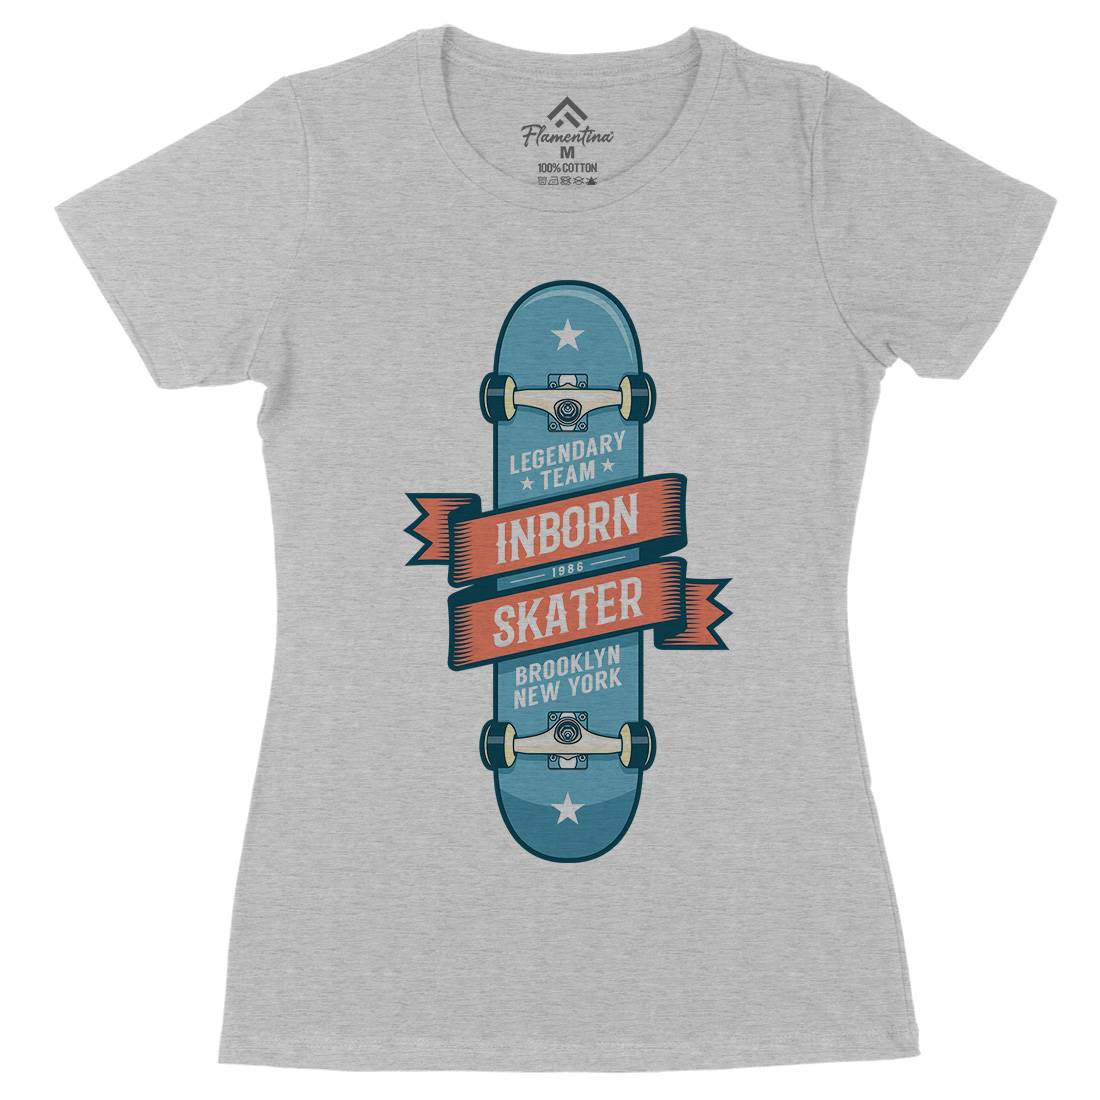 Inborn Skater Womens Organic Crew Neck T-Shirt Skate D895